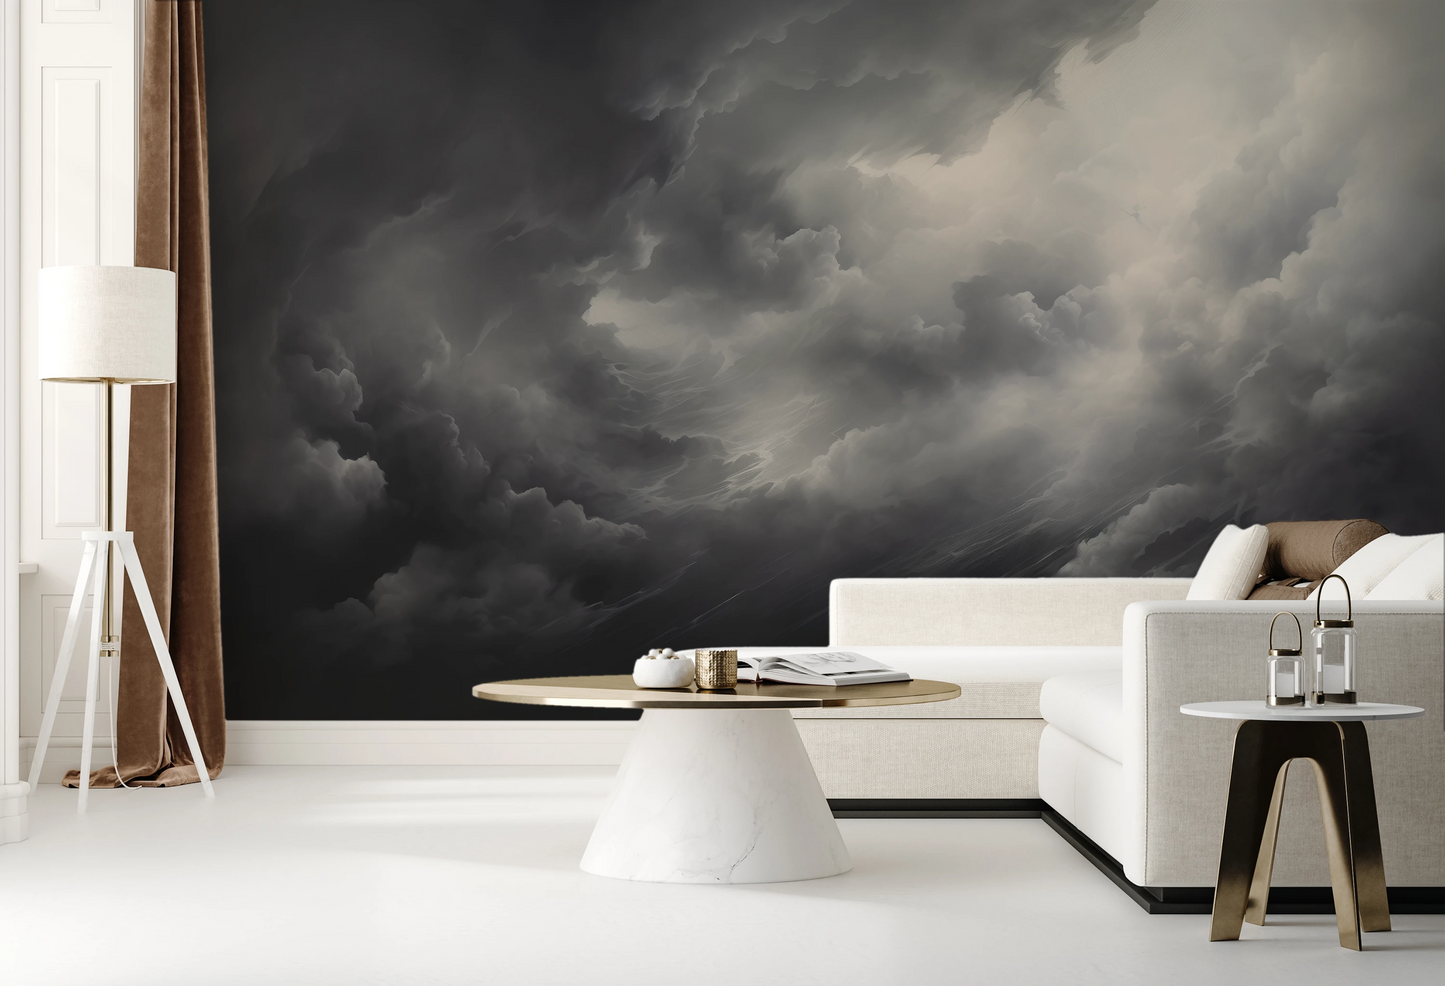 Wzór fototapety o nazwie Storm's Crescendo pokazanej w kontekście pomieszczenia.